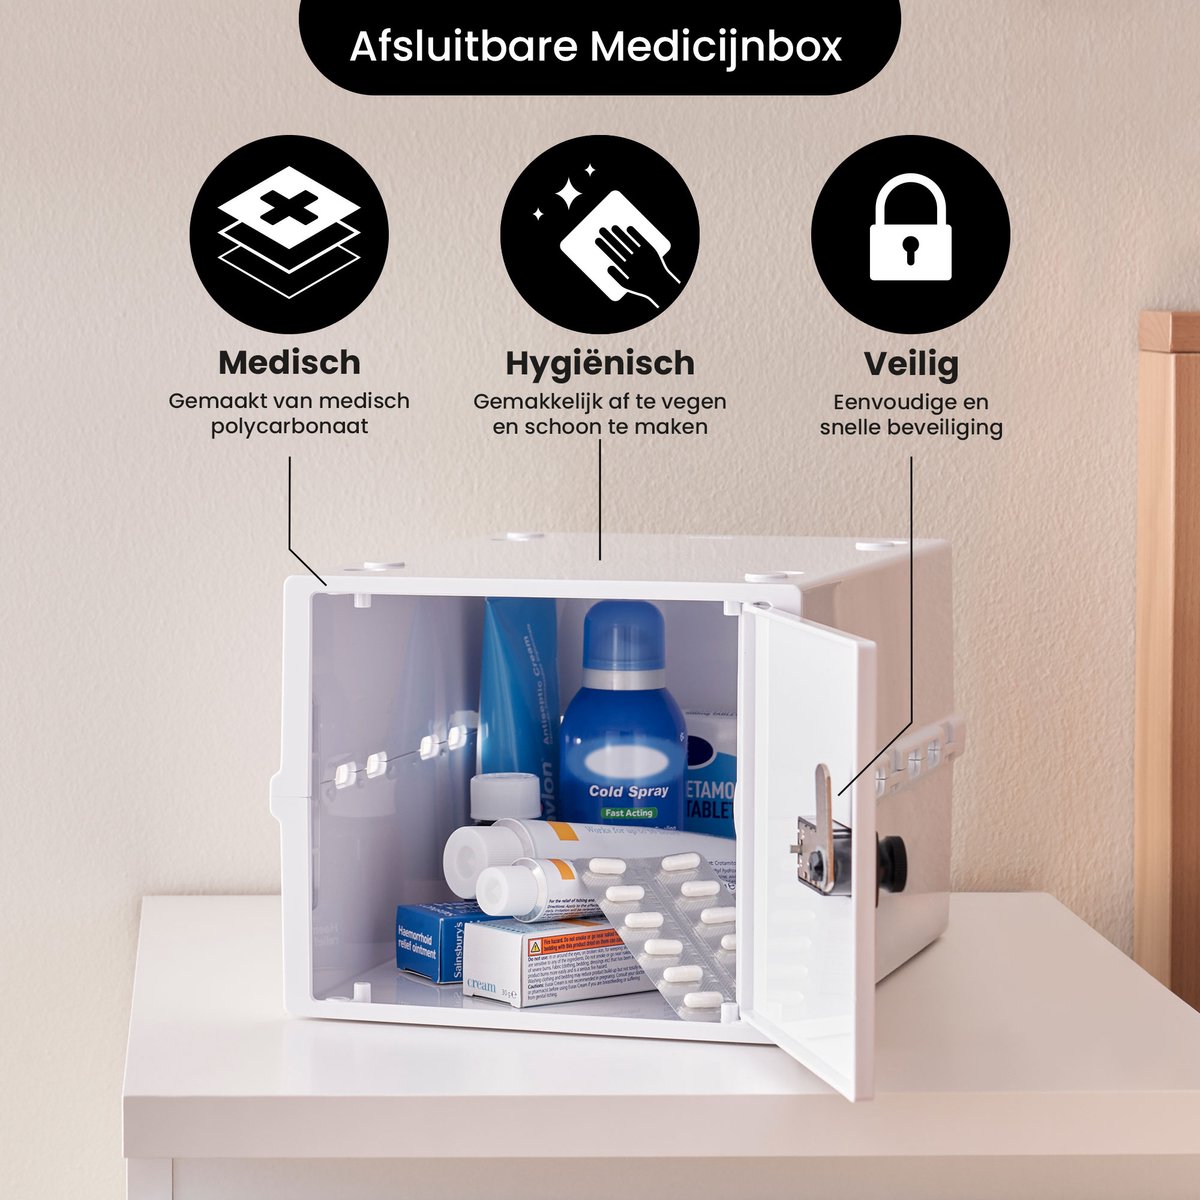 Les médicaments sont rangés par catégories, dans des boîtes transparentes  (pinterest)